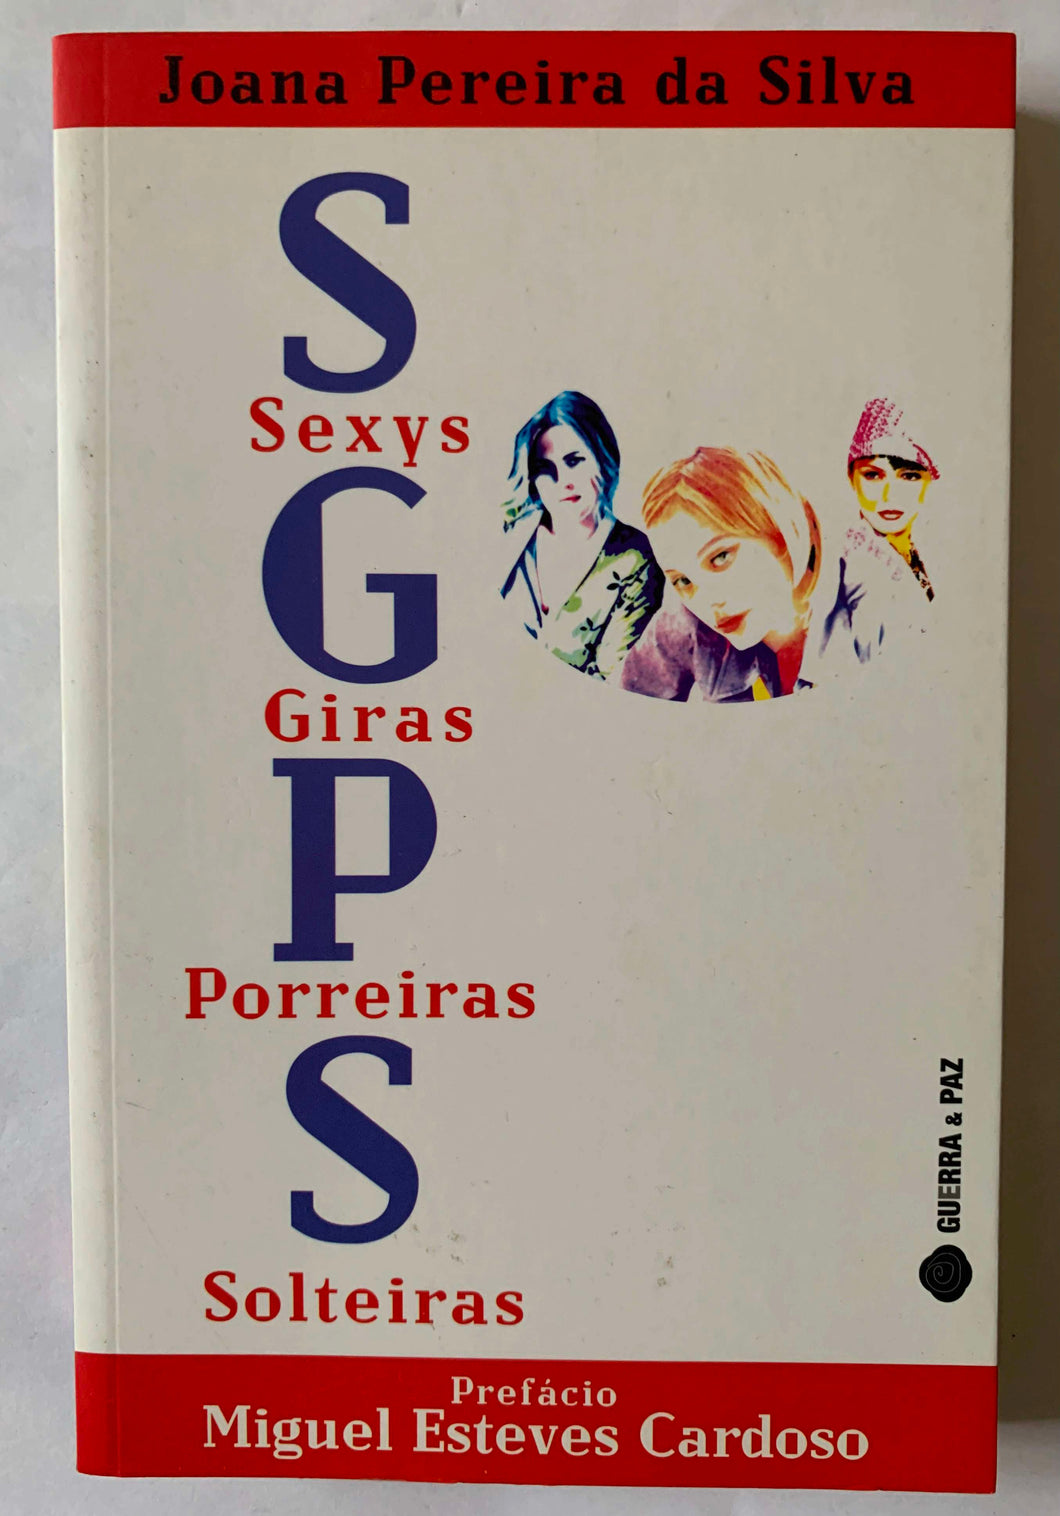 SGPS: Sexys, Giras, Porreiras e Solteiras